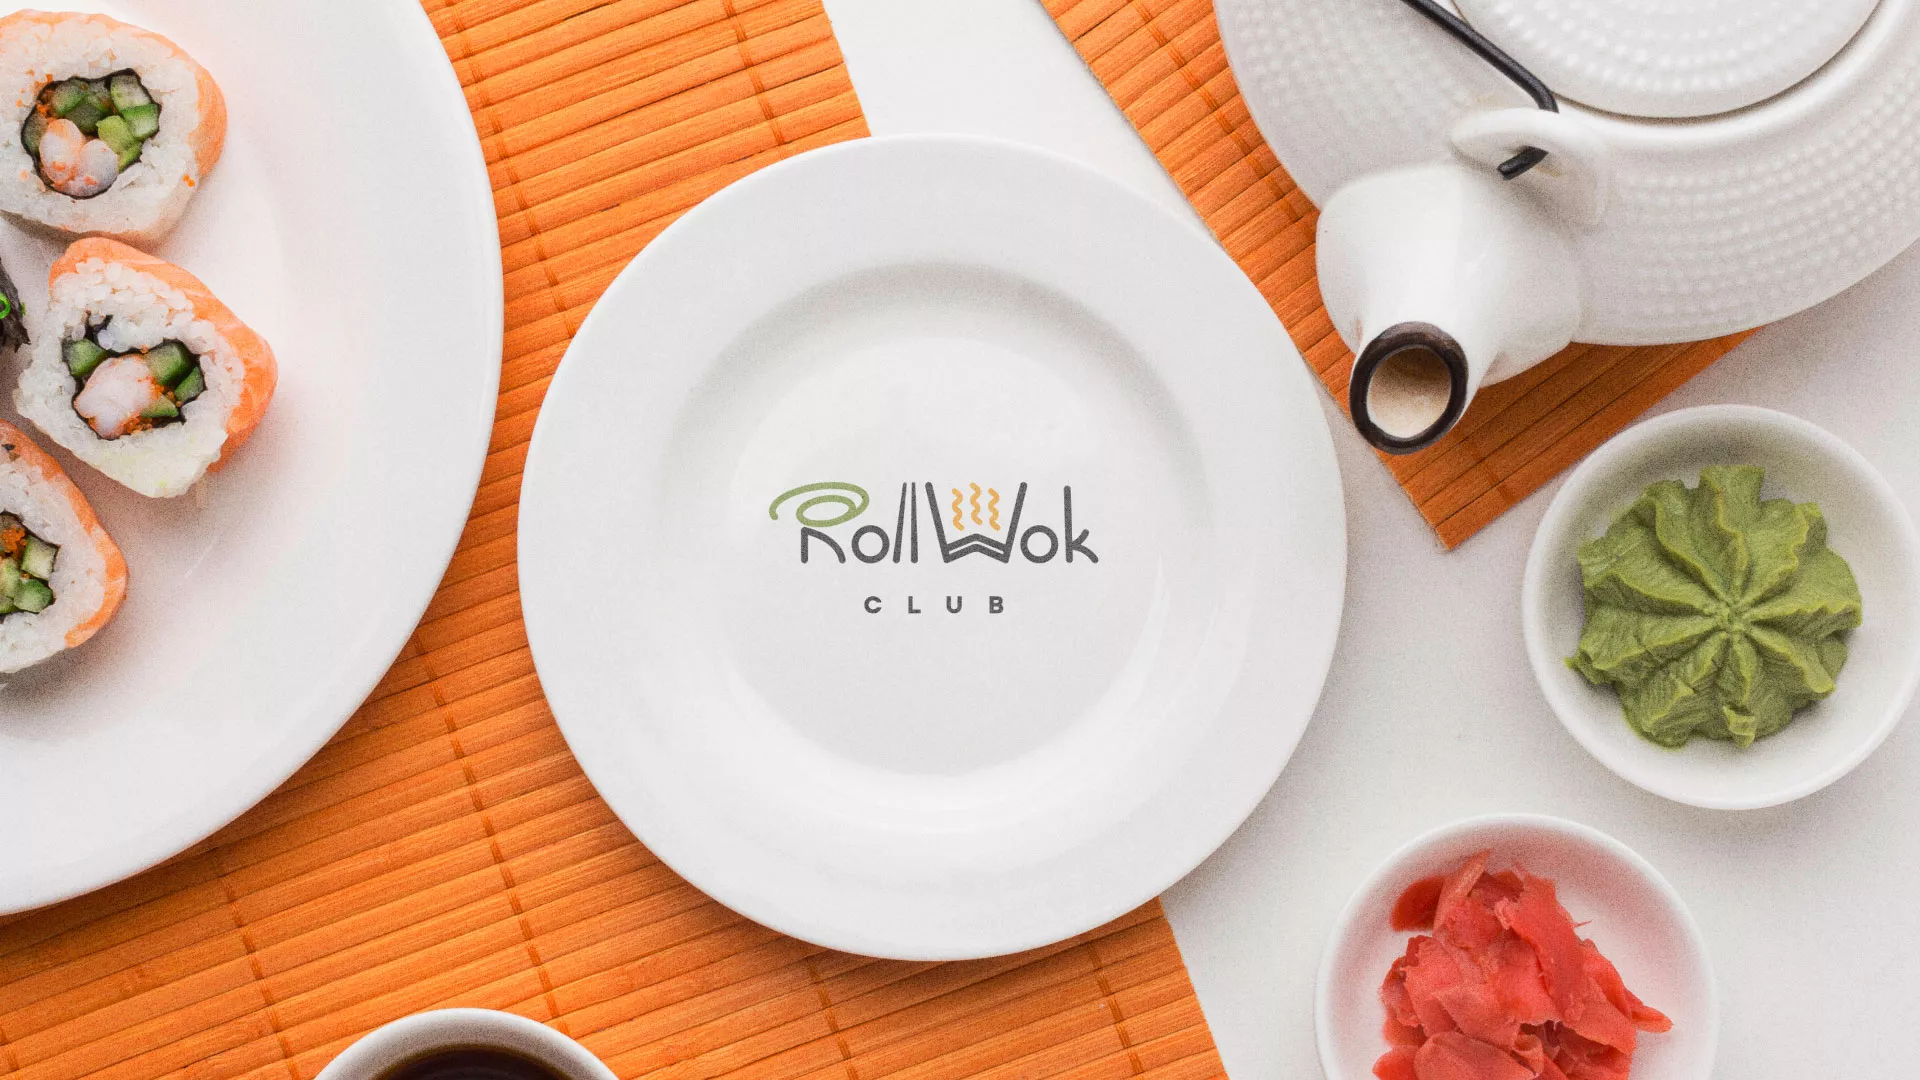 Разработка логотипа и фирменного стиля суши-бара «Roll Wok Club» в Отрадном